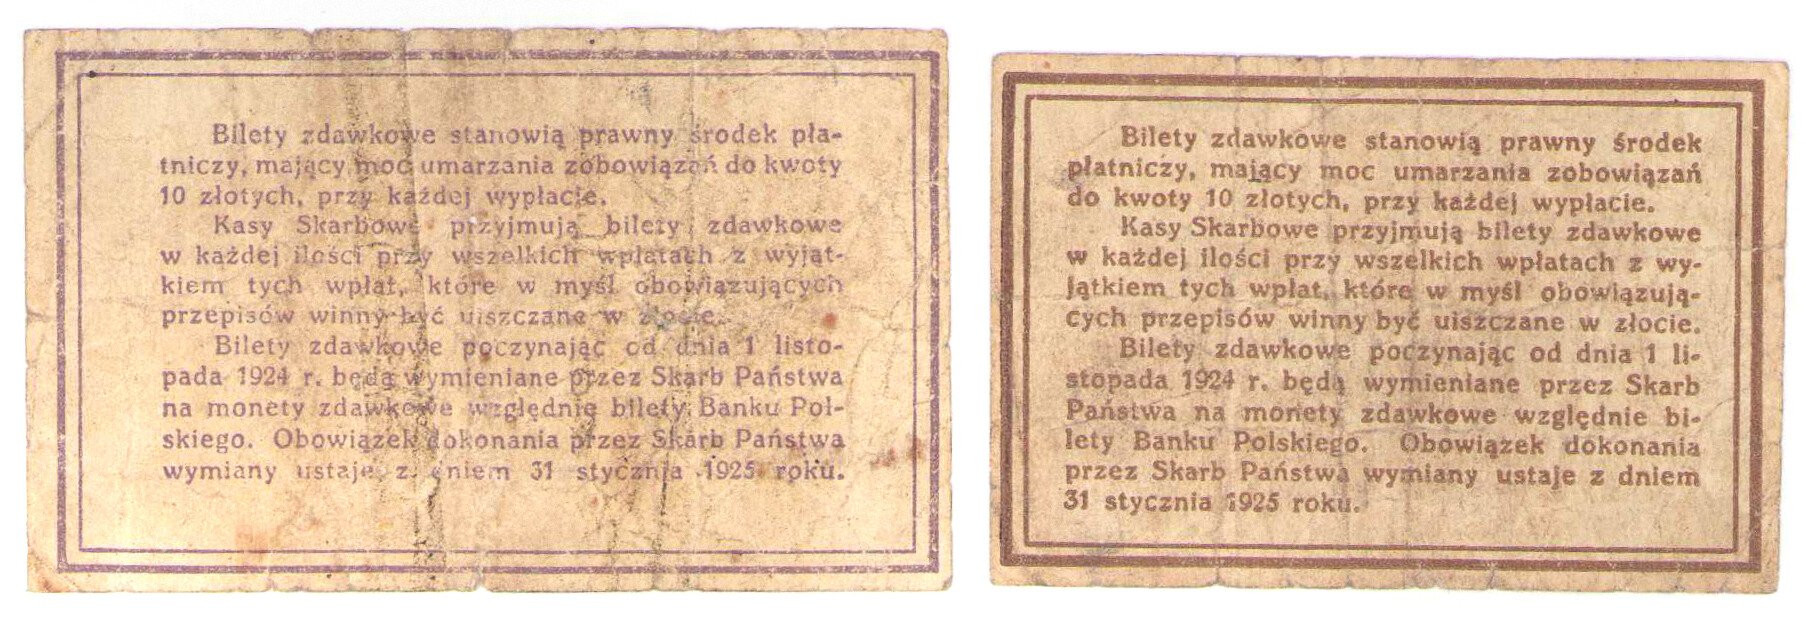 10 i 20 groszy 1924, zestaw 2 sztuk